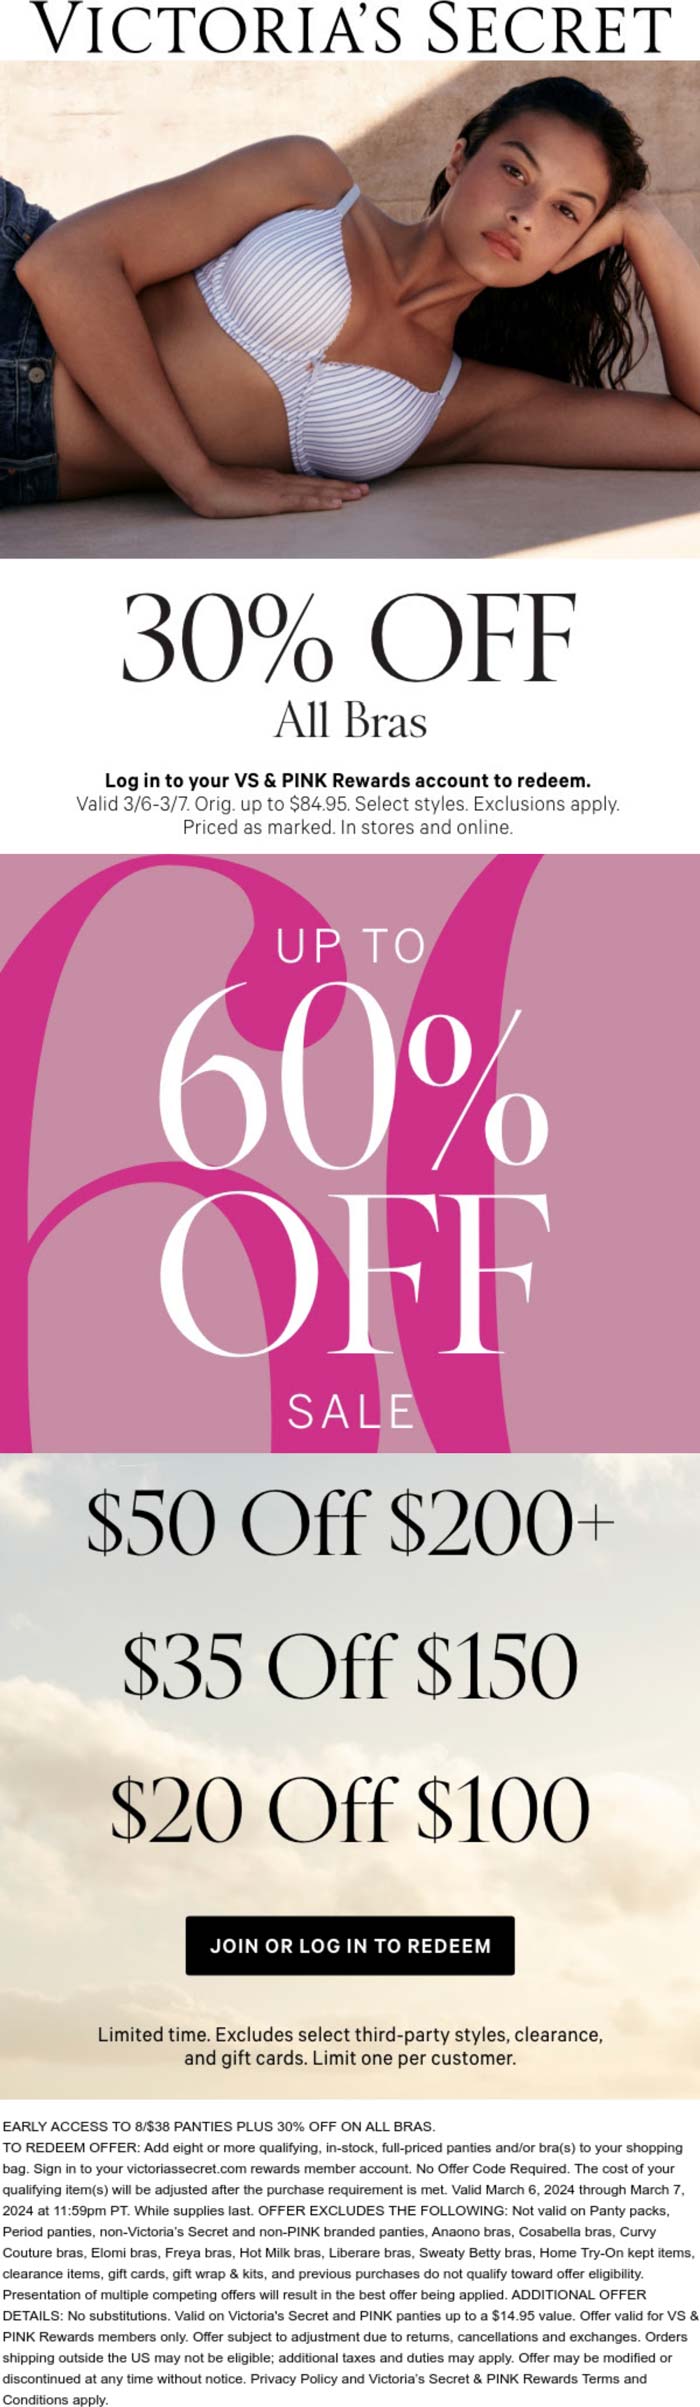 Victorias Secret stores Coupon  30% off bras + $20-$50 off $100+ logged in today at Victorias Secret #victoriassecret 